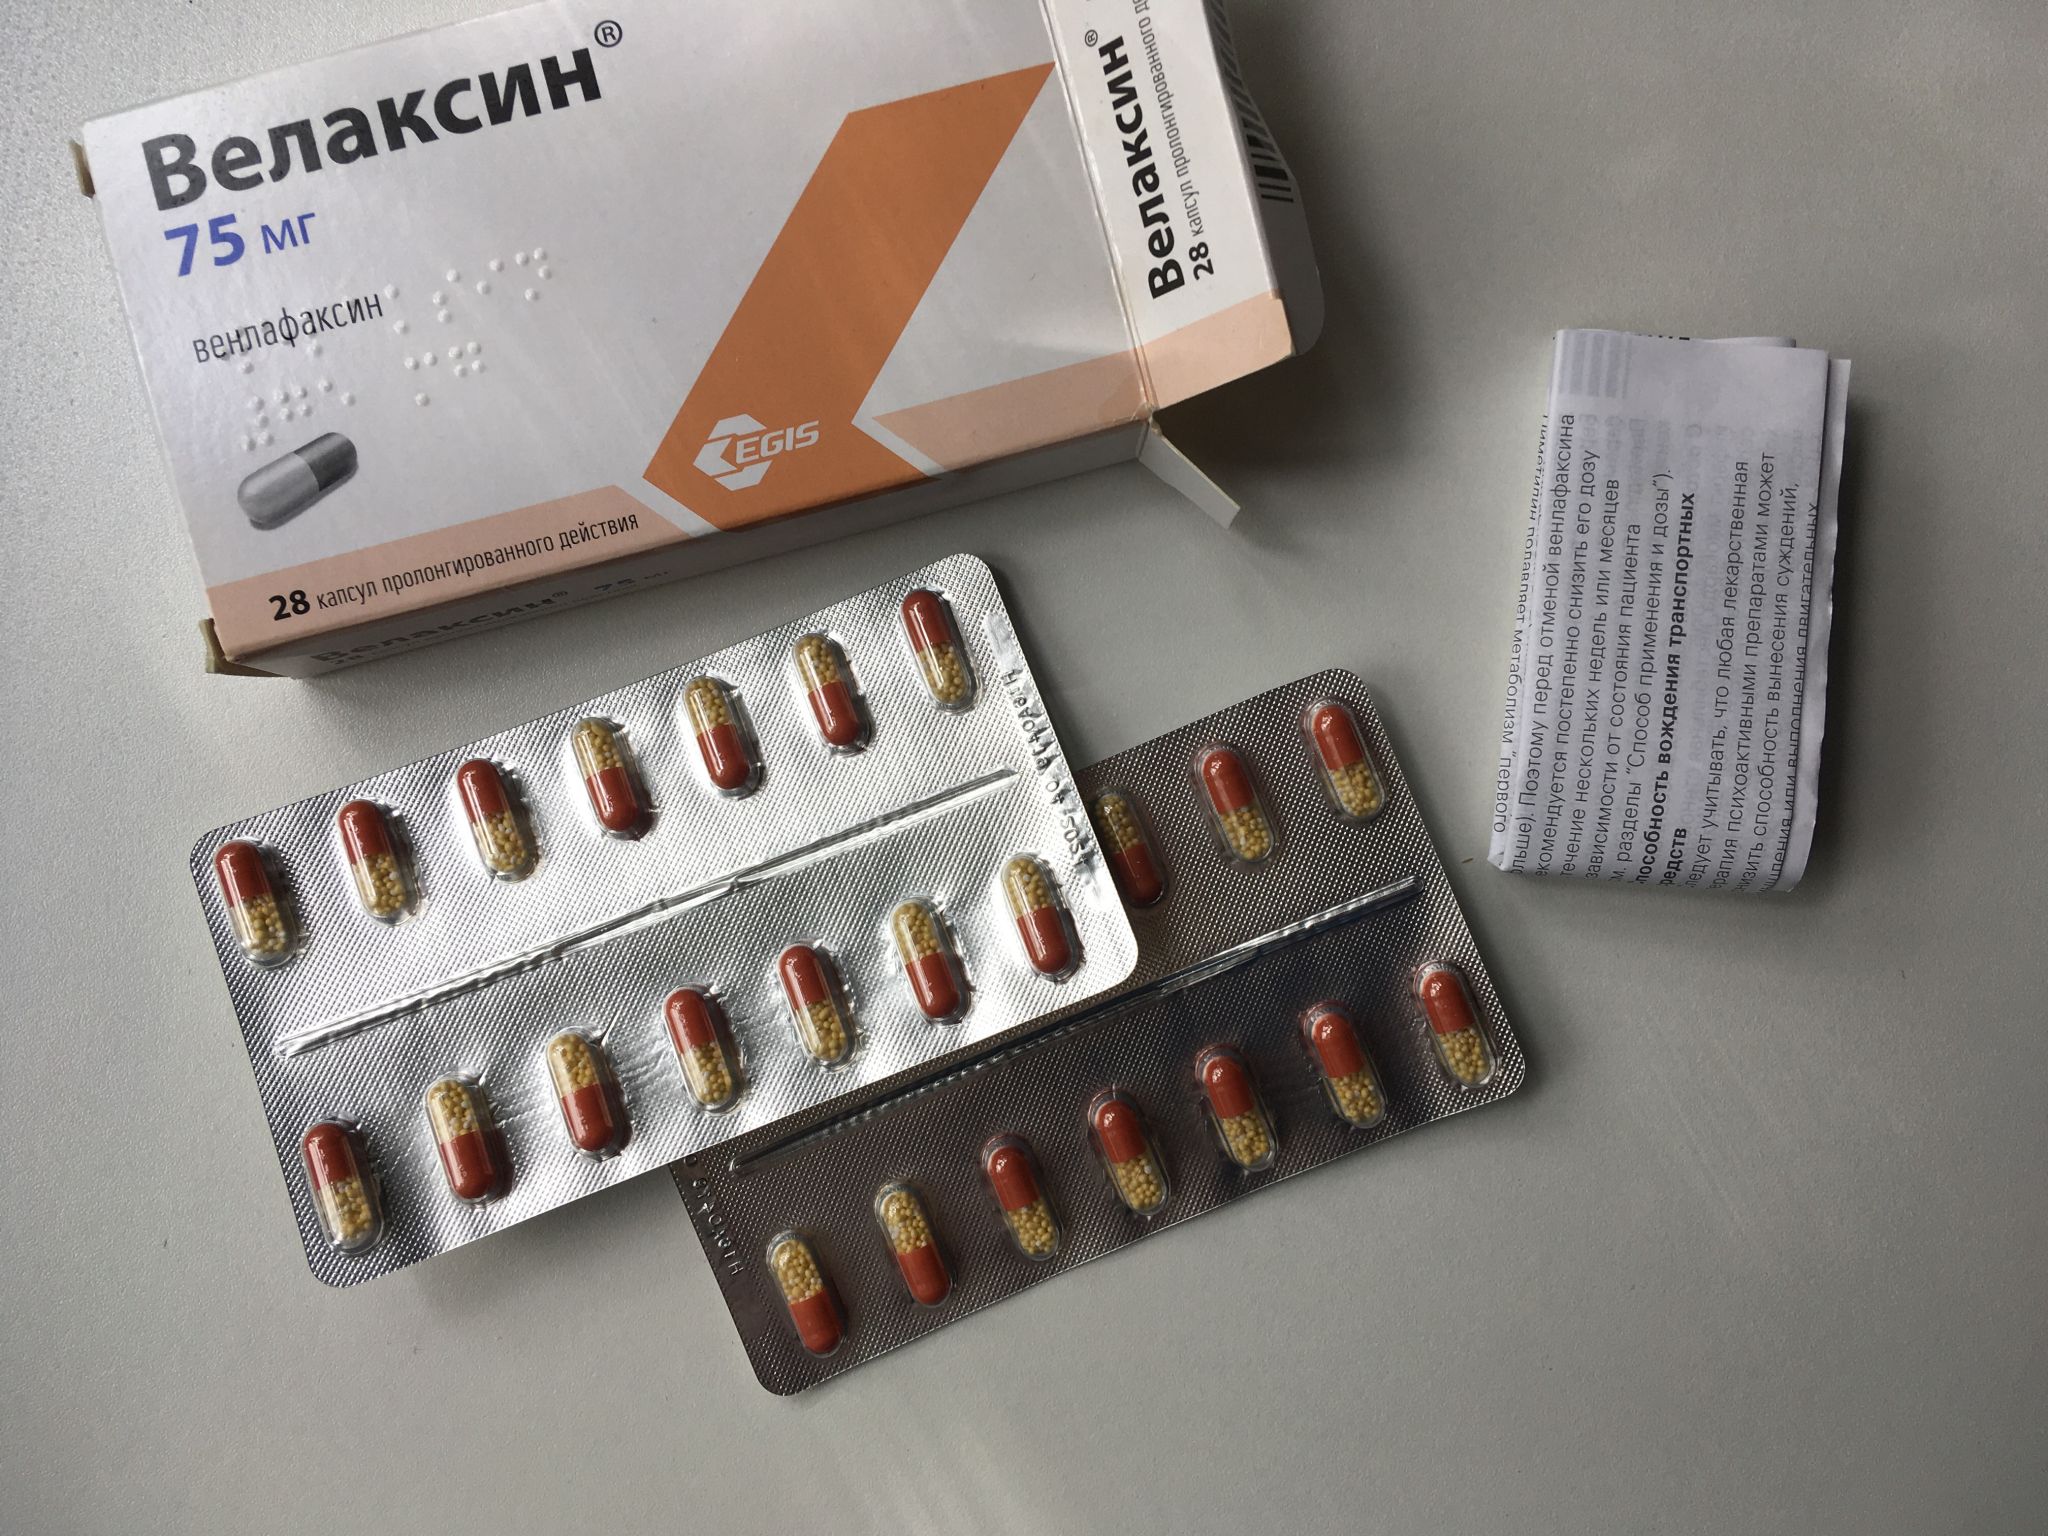 Велаксин 75 мг купить